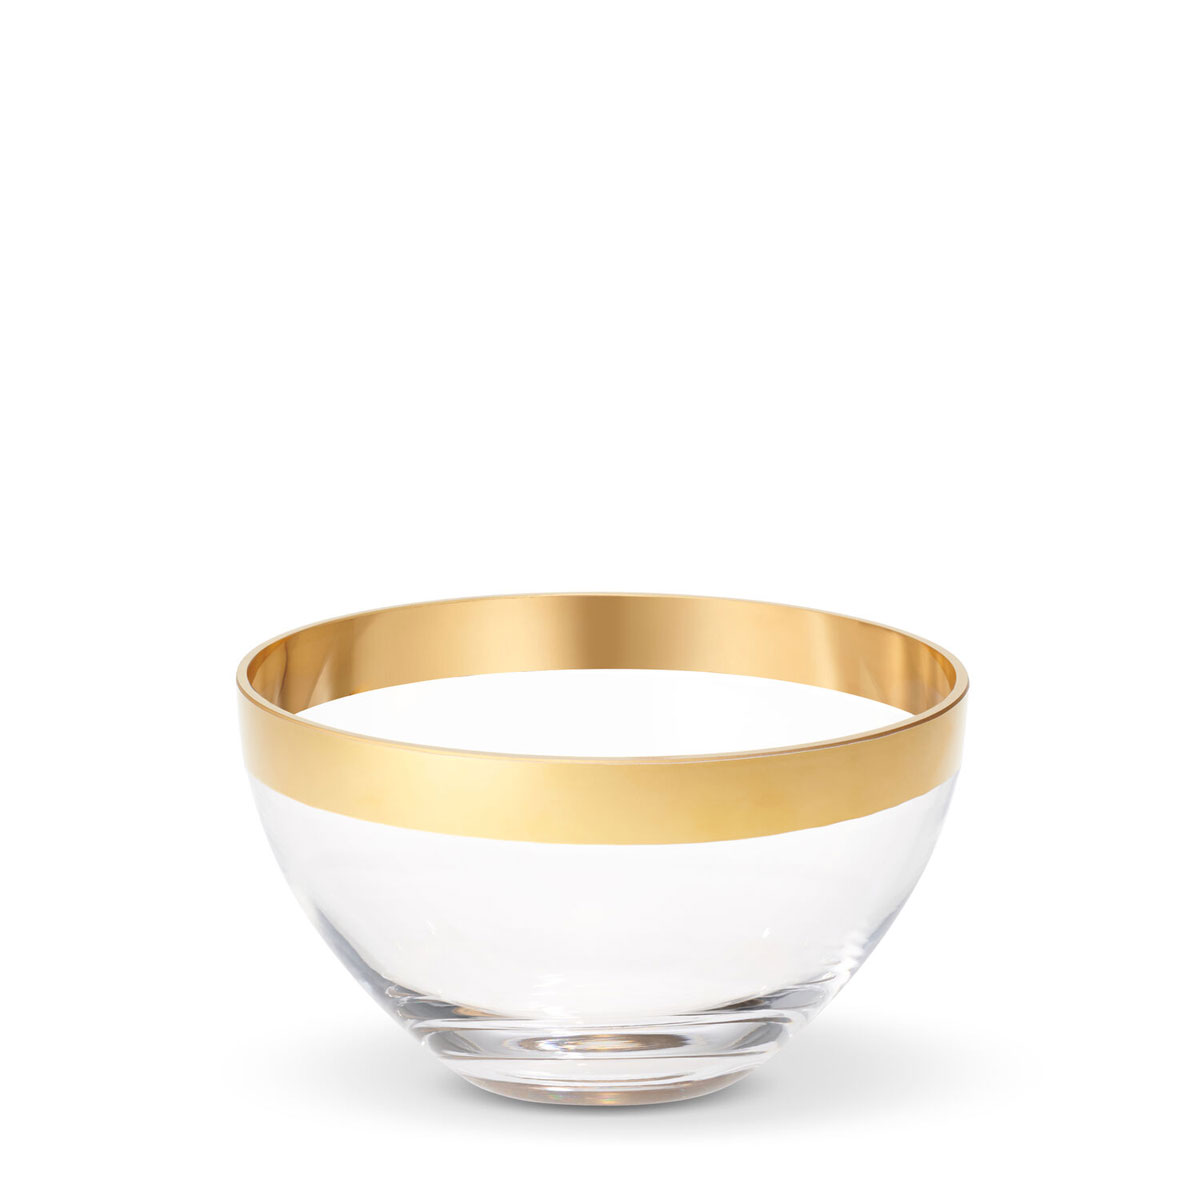 Aerin Gabriel Small Crystal Bowl, Clear, Gold